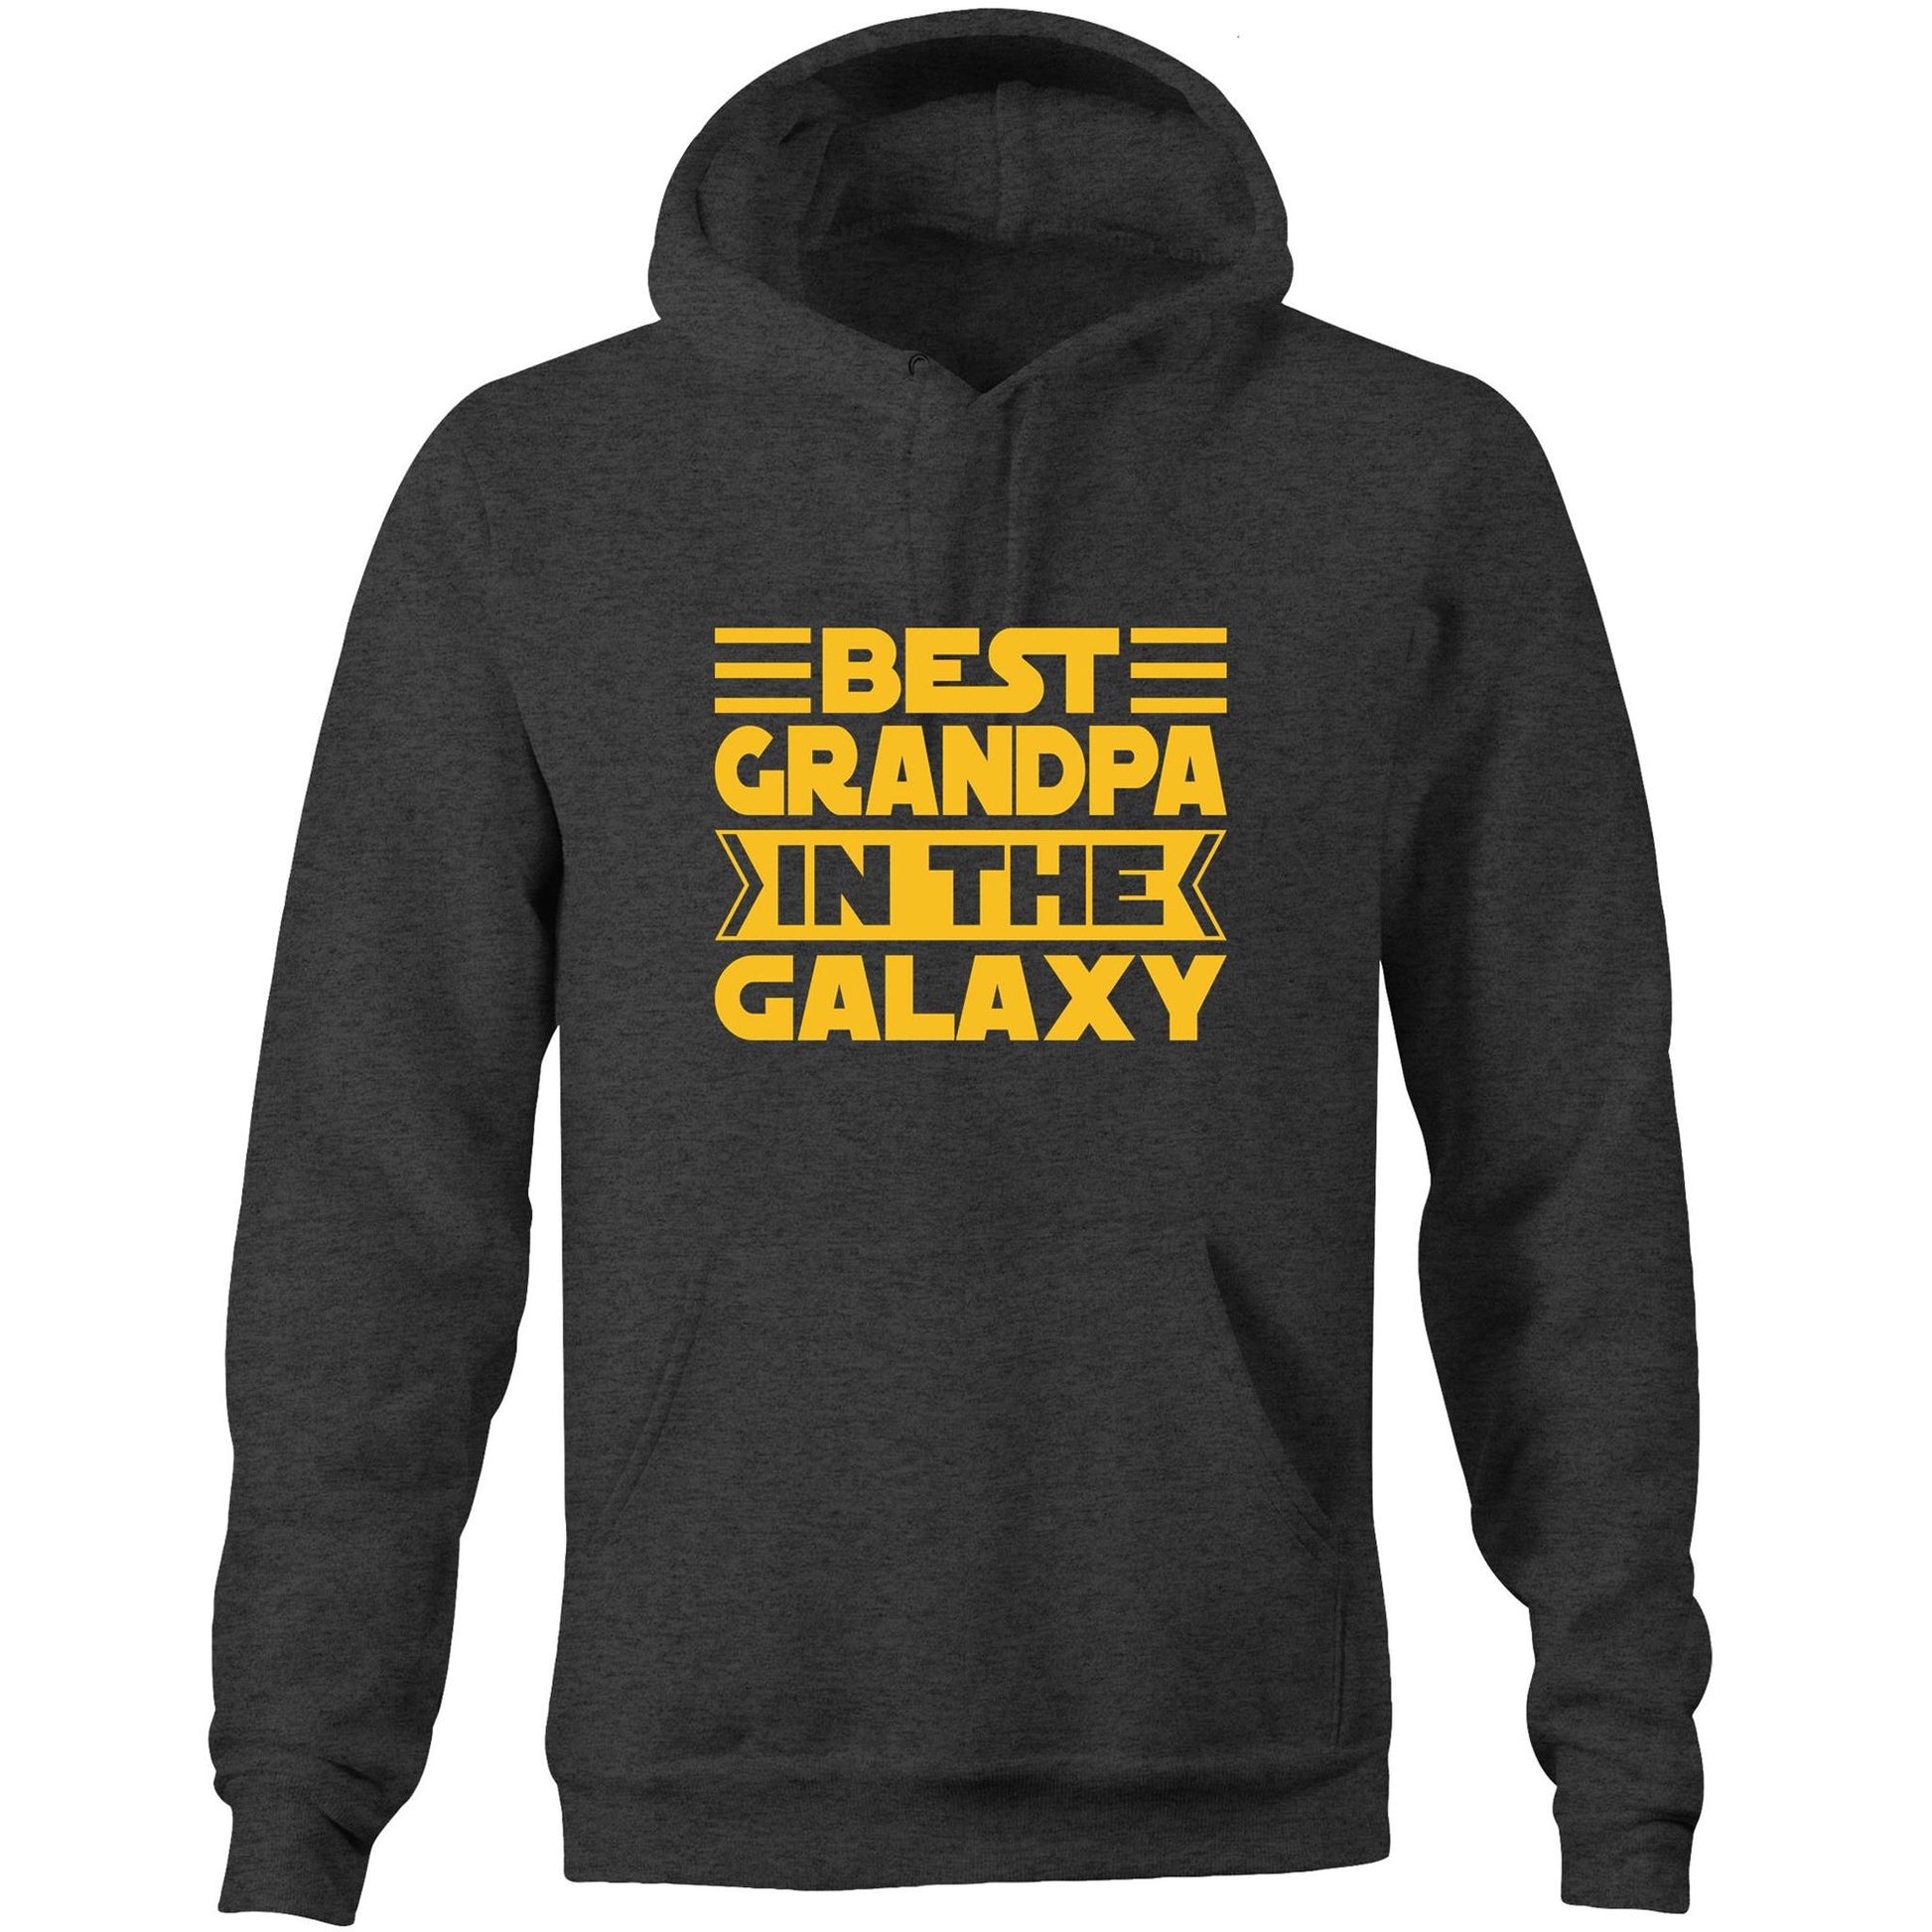 Best Grandpa In The Galaxy - Pocket Hoodie Sweatshirt Asphalt Marle Hoodie Dad